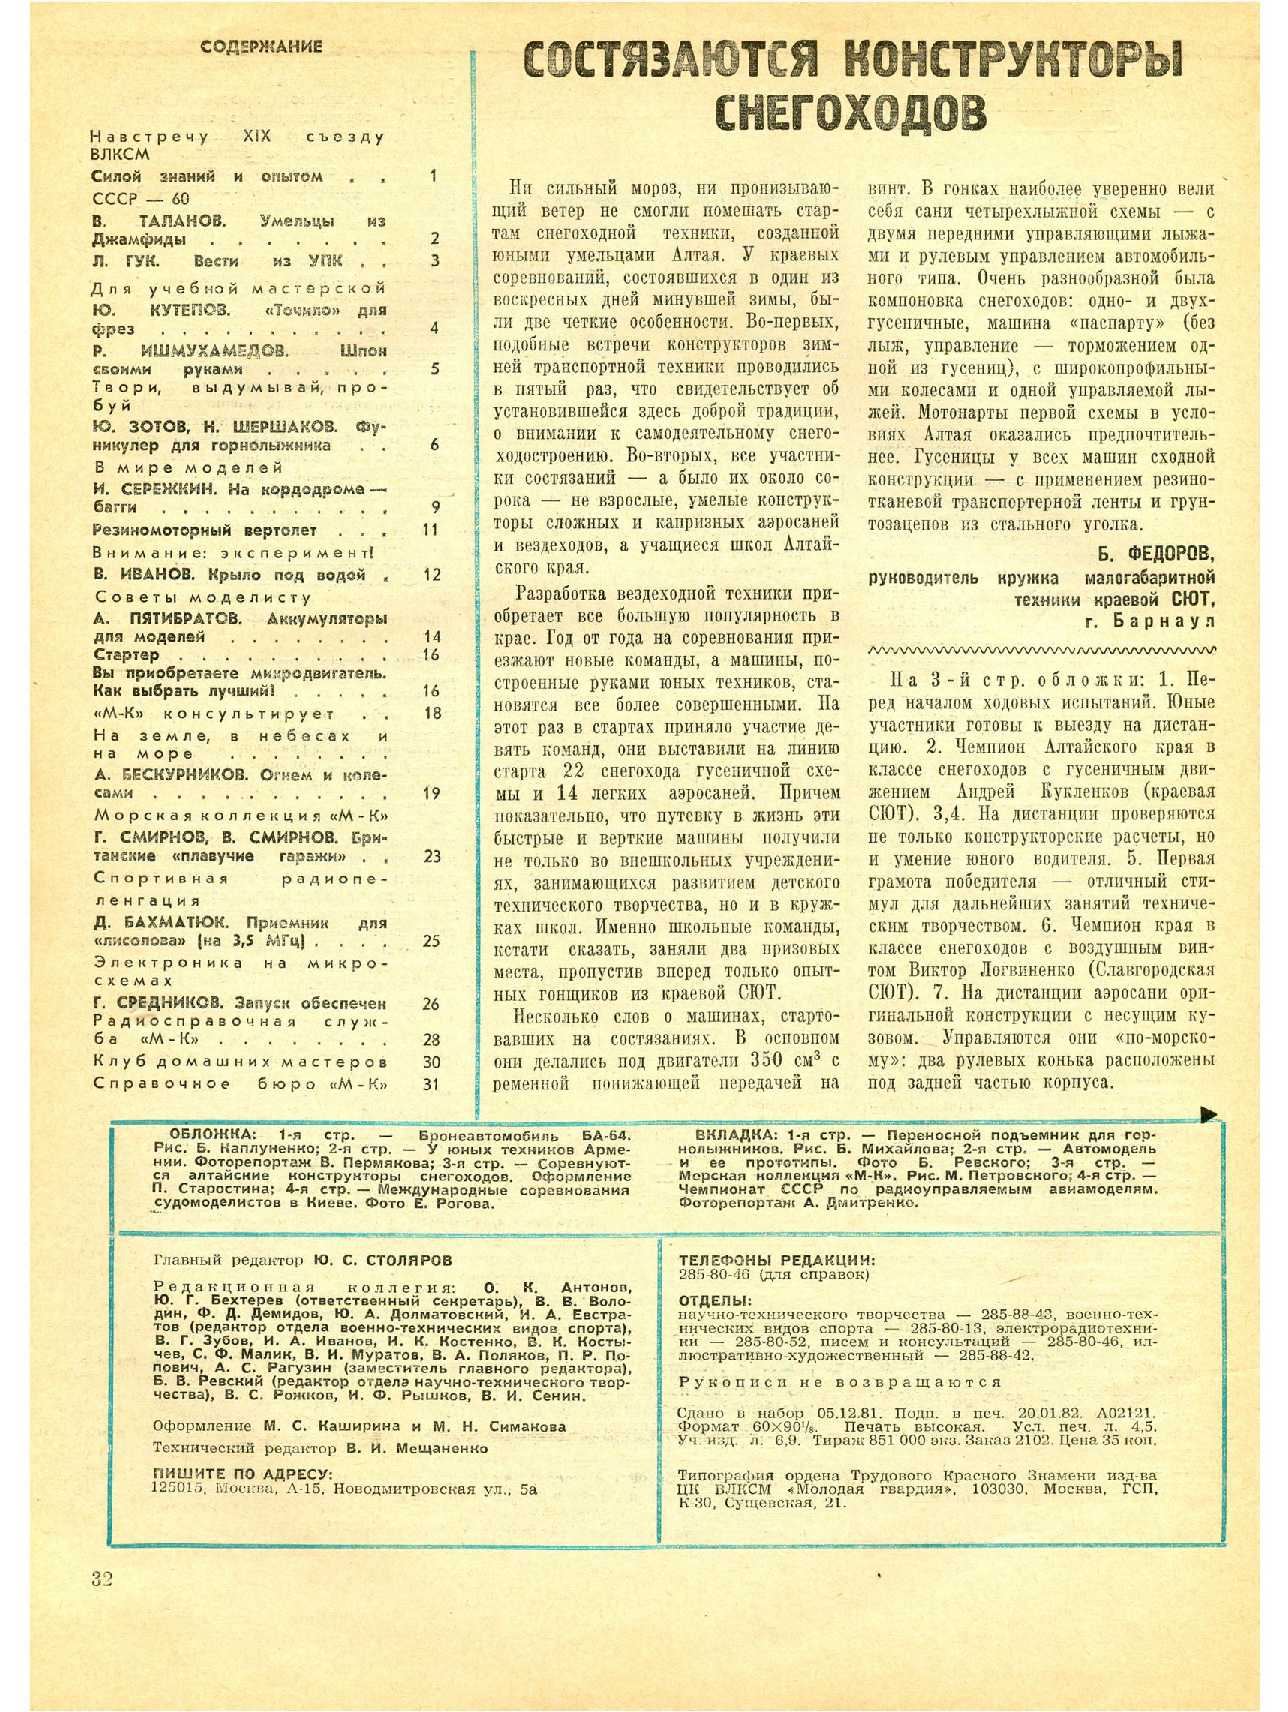 МК 2, 1982, 32 c.